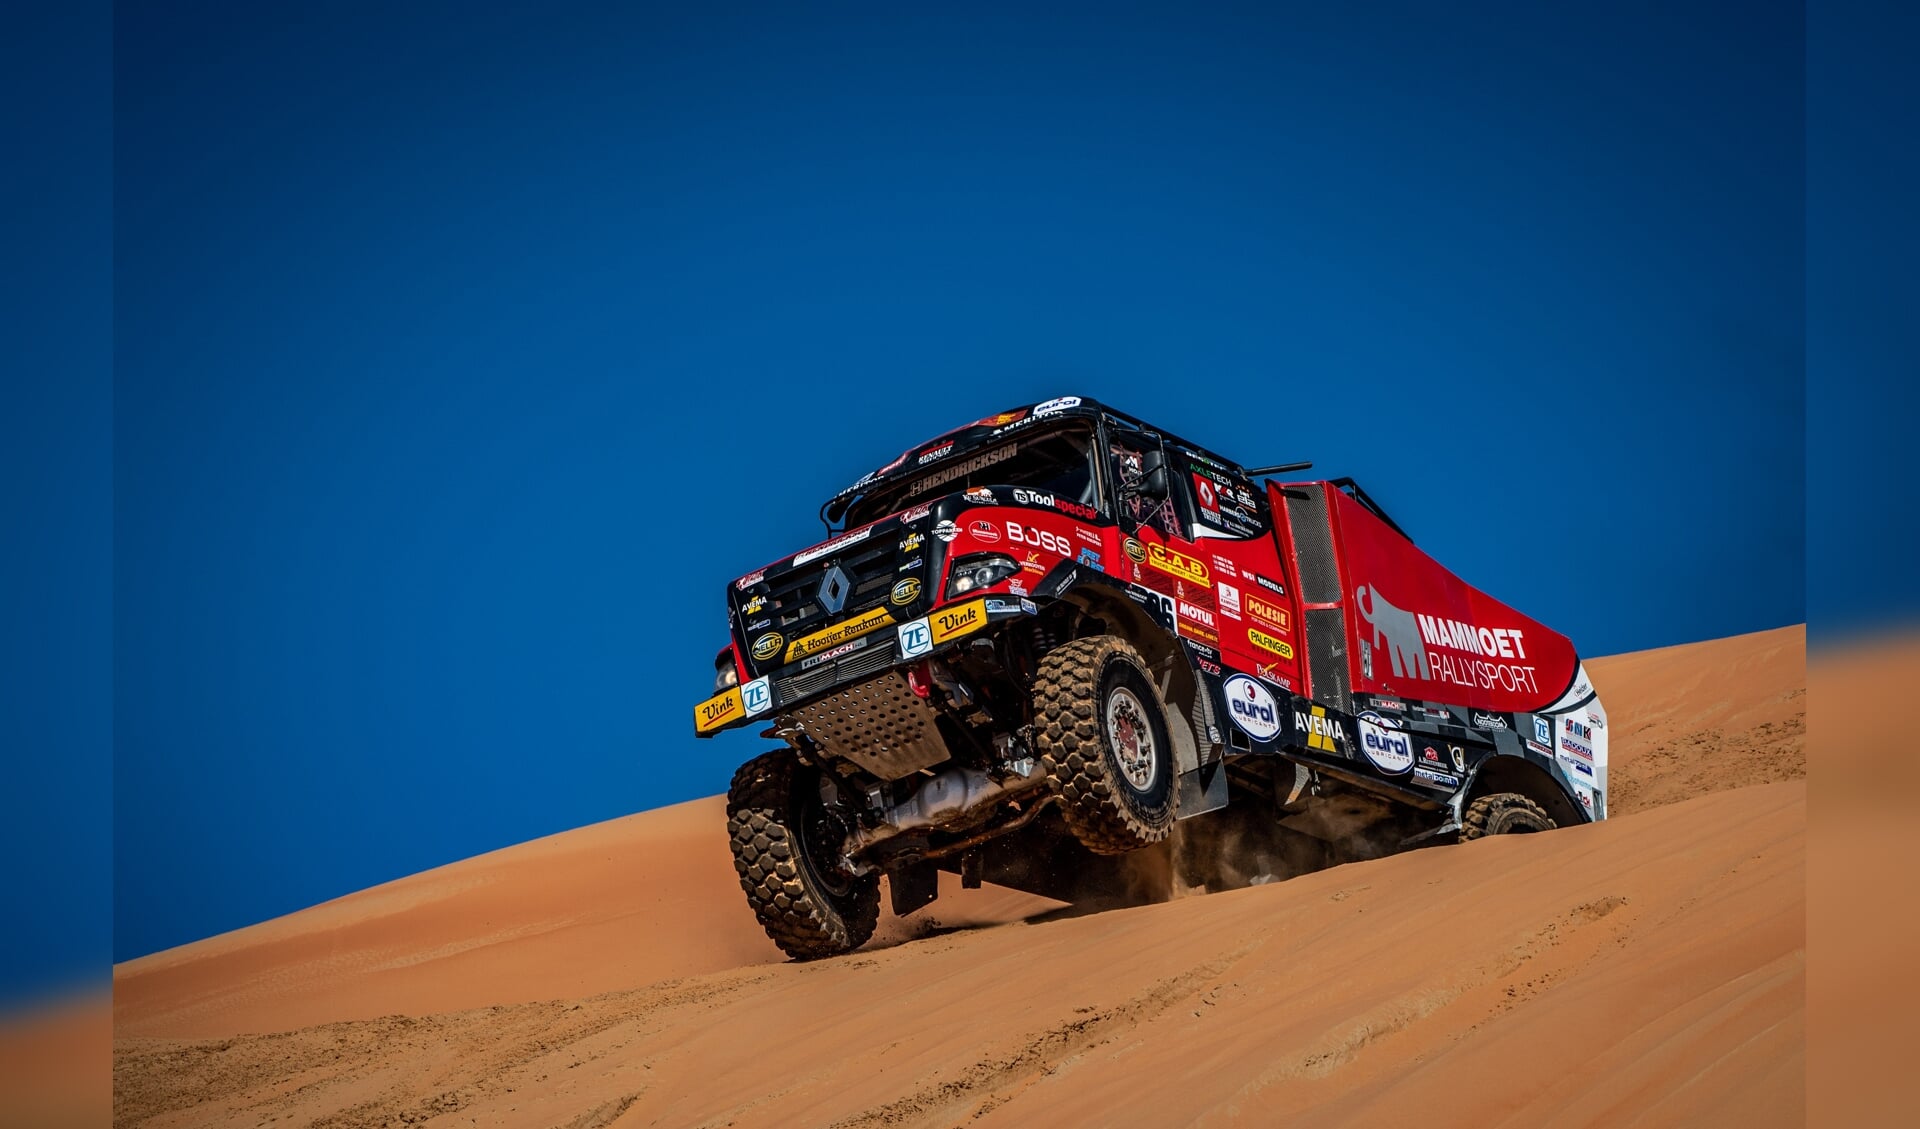 Harskamper Martin van den Brink sloot de Dakar Rally af met een achtste plaats in de slotetappe.